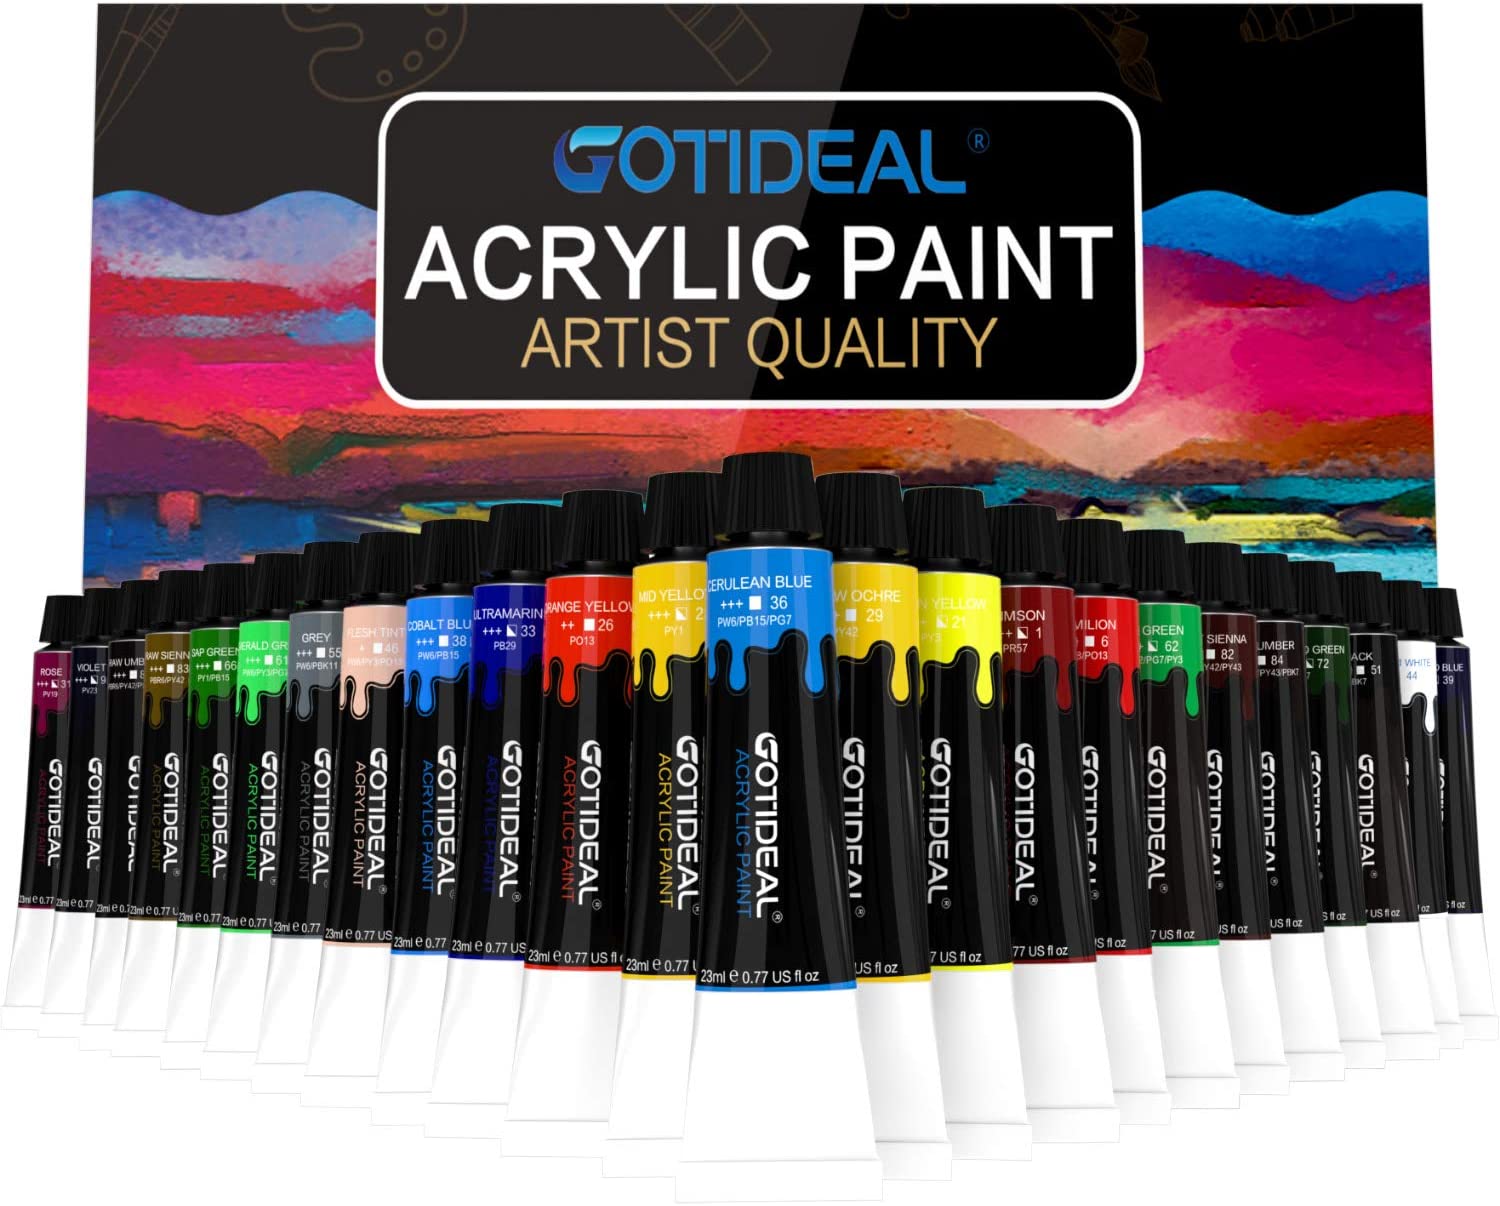 GOTIDEAL Artist Acrylic Paint Set, 24-Colors